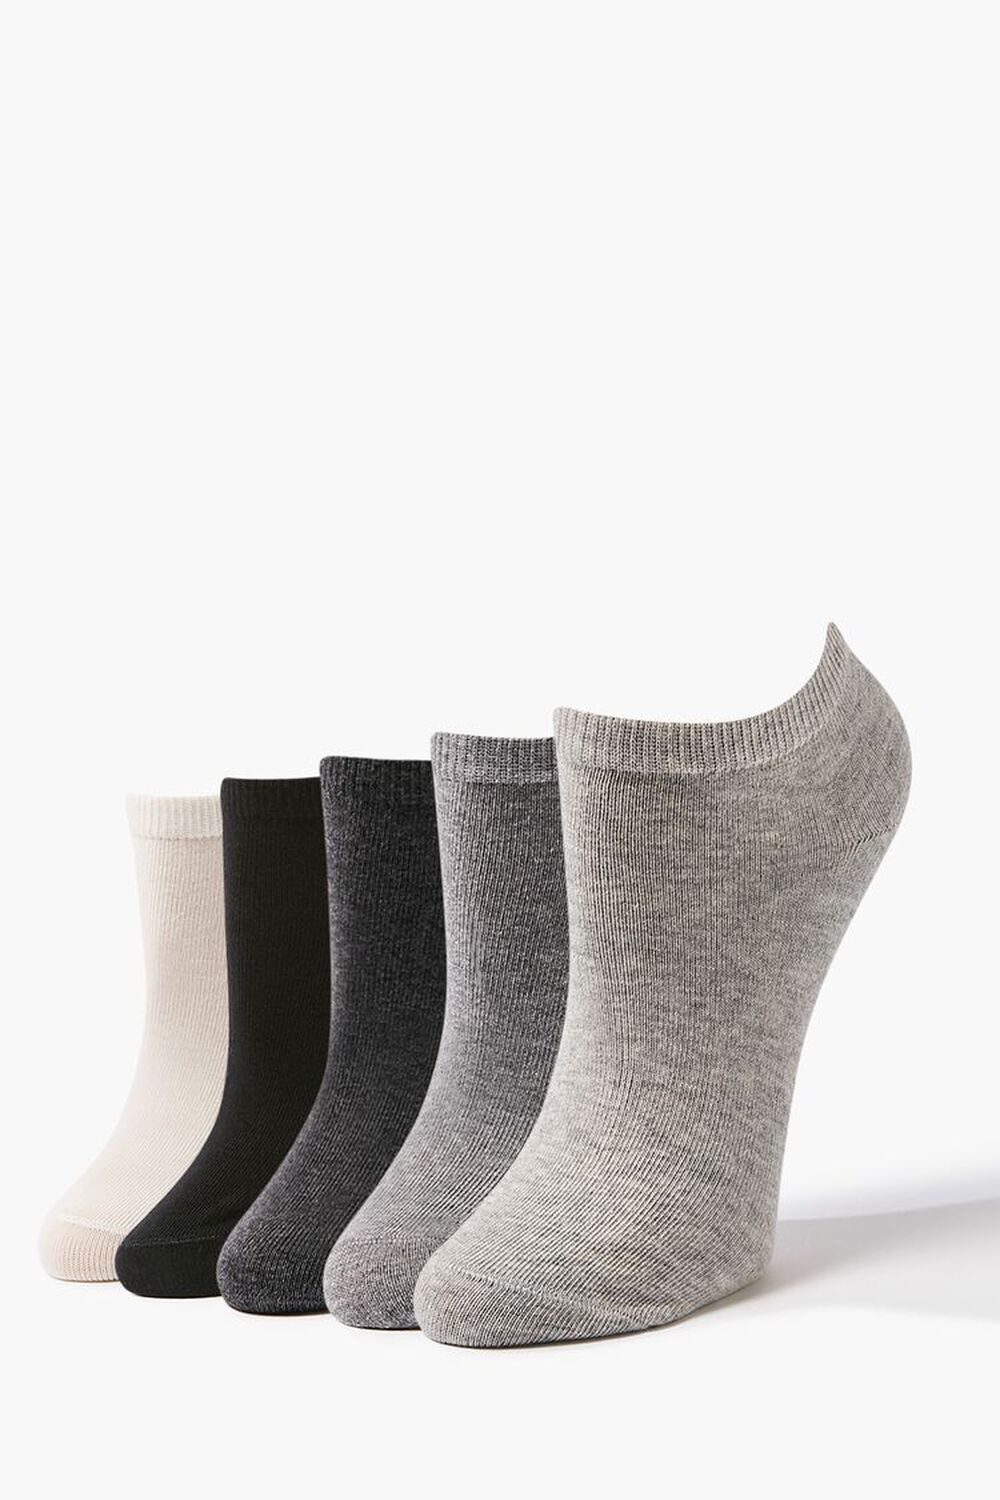 BLACK/GREY Ankle Sock Set - 5 pack, image 1